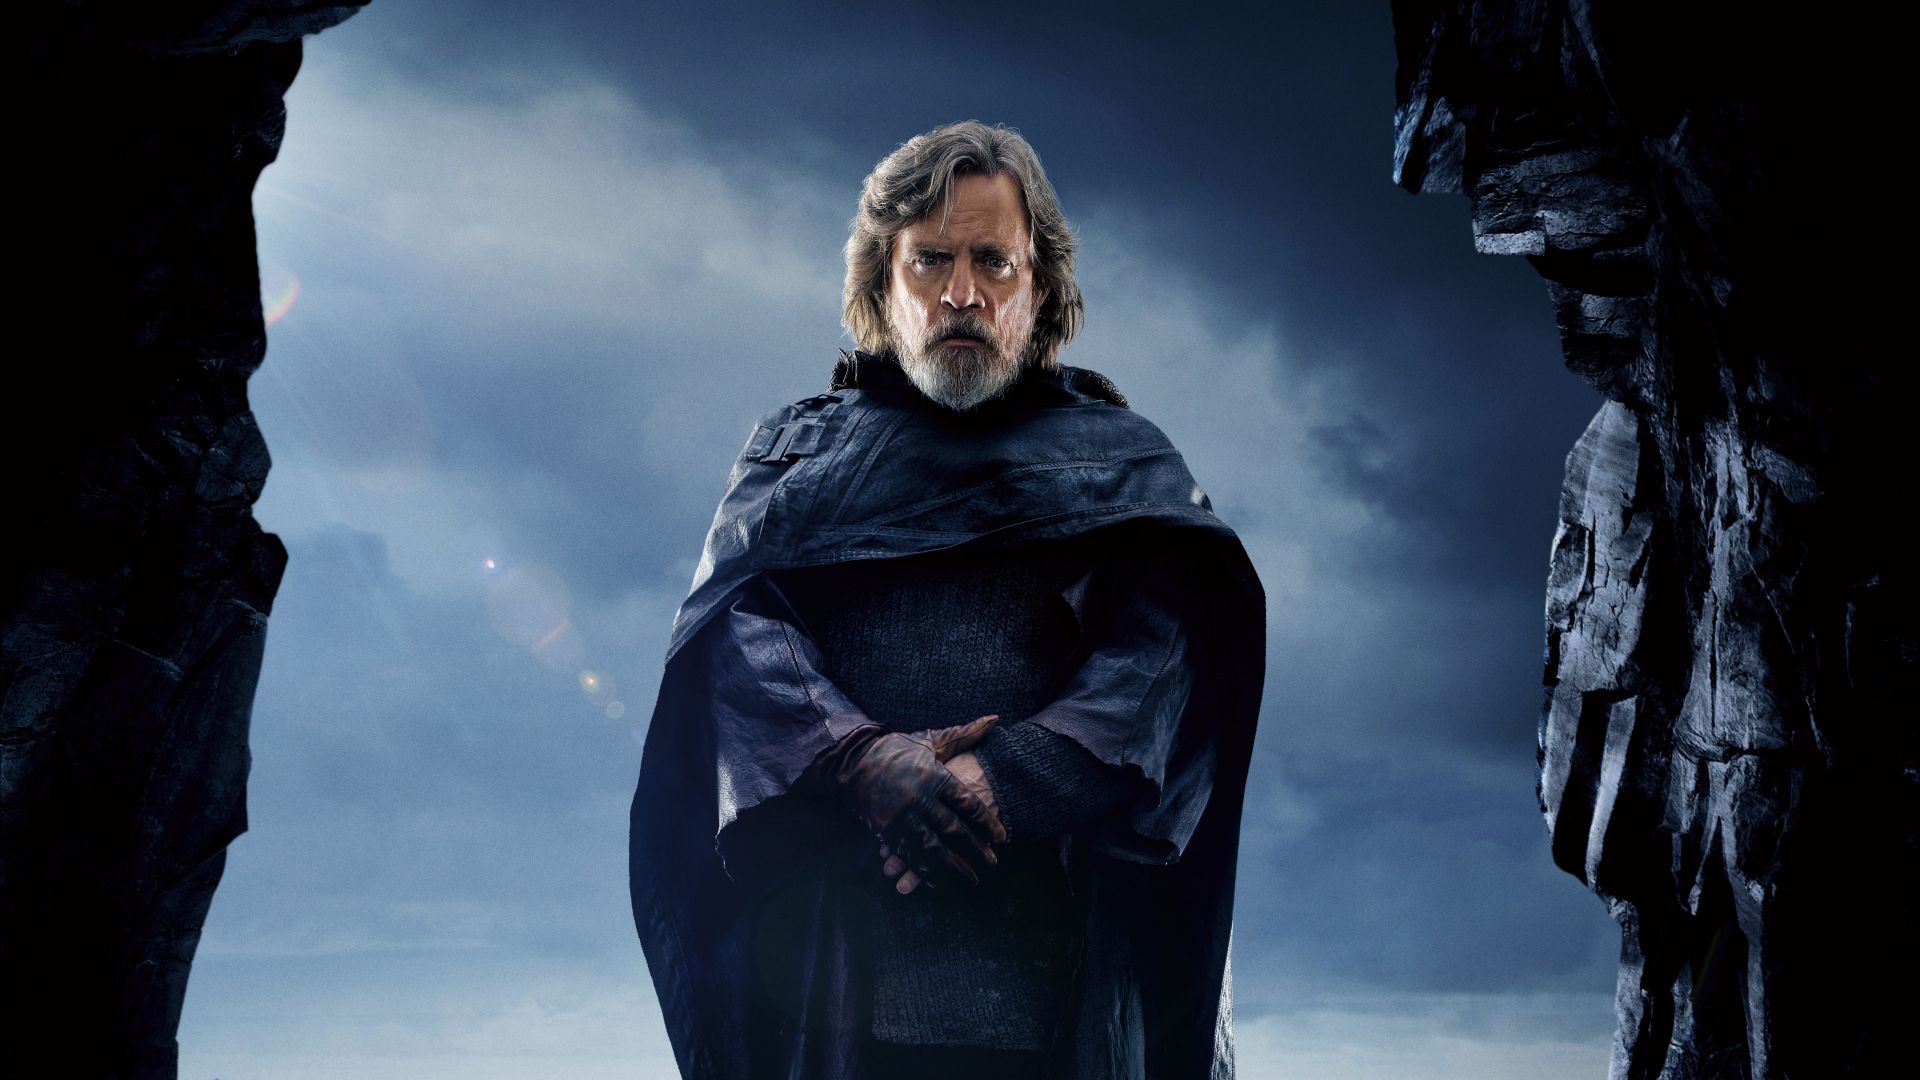 Star Wars: The Last Jedi, Mark Hamill, 5k (horizontal)